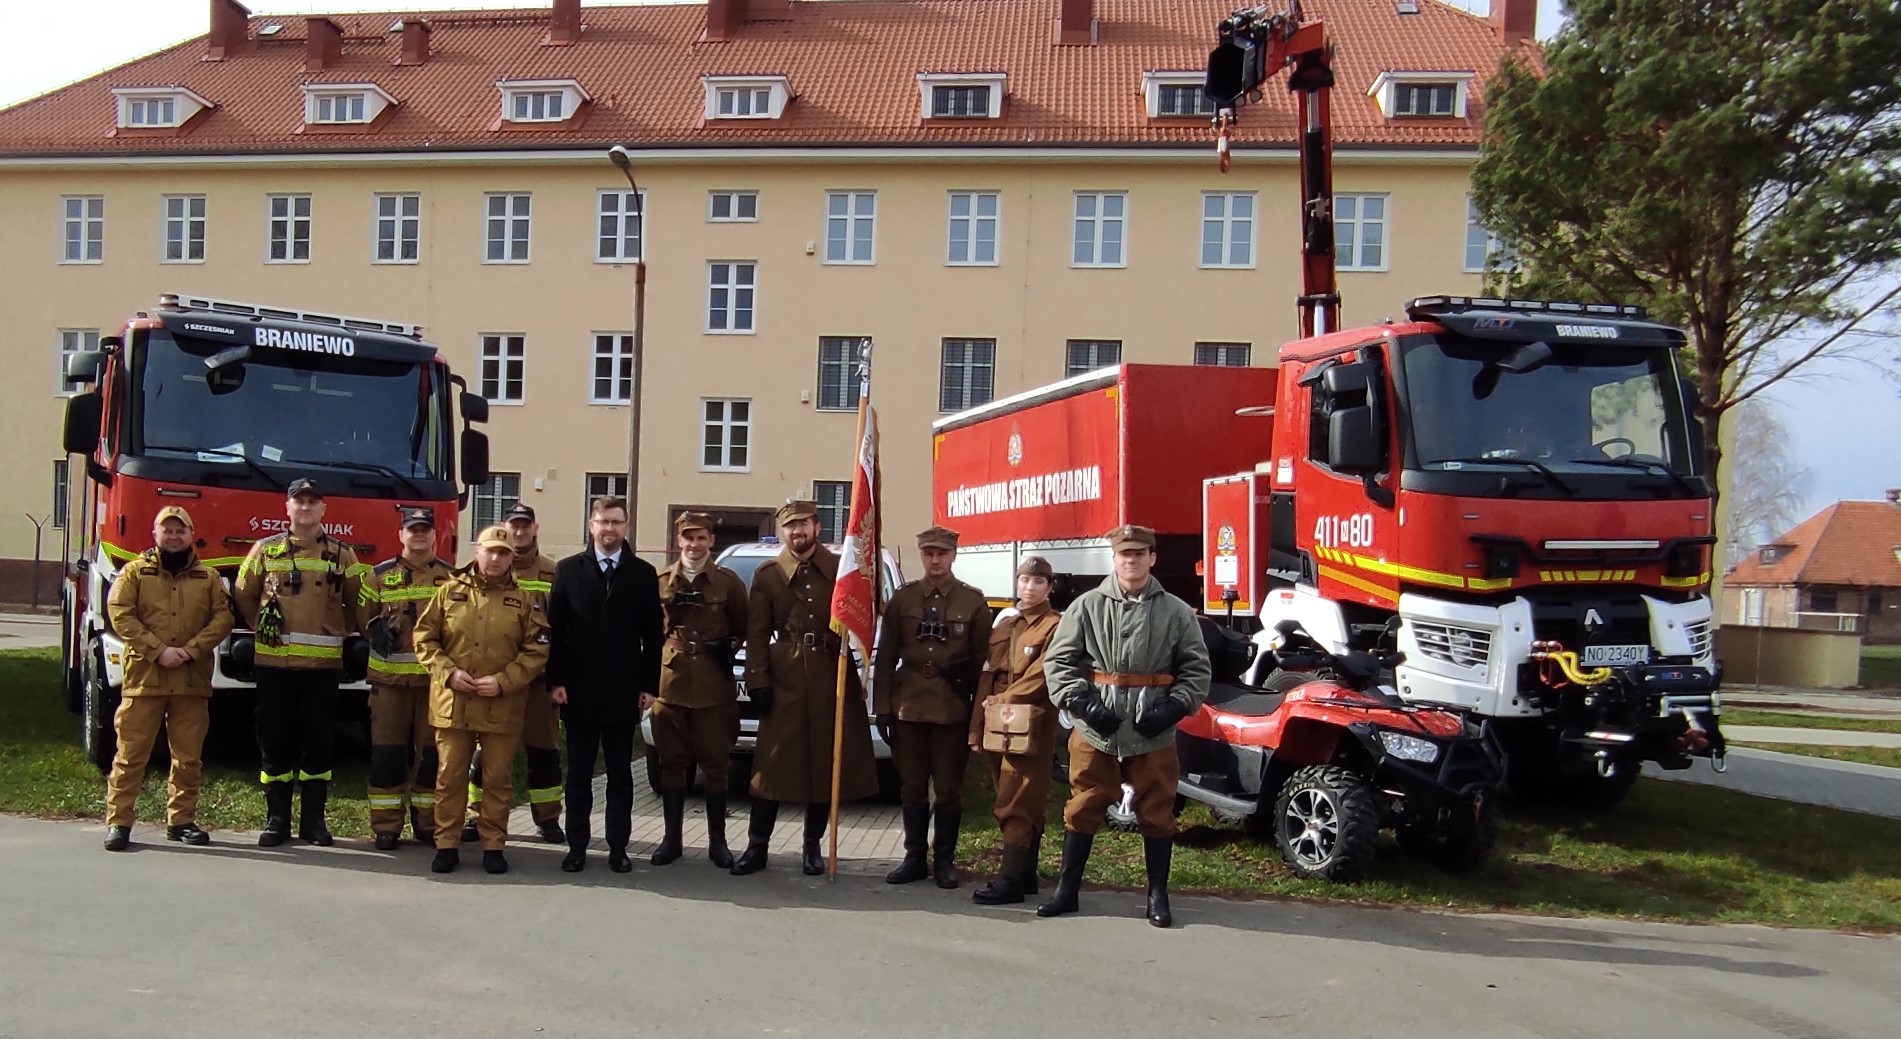 43 Batalion Lekkiej Piechoty w Braniewie ma swojego patrona